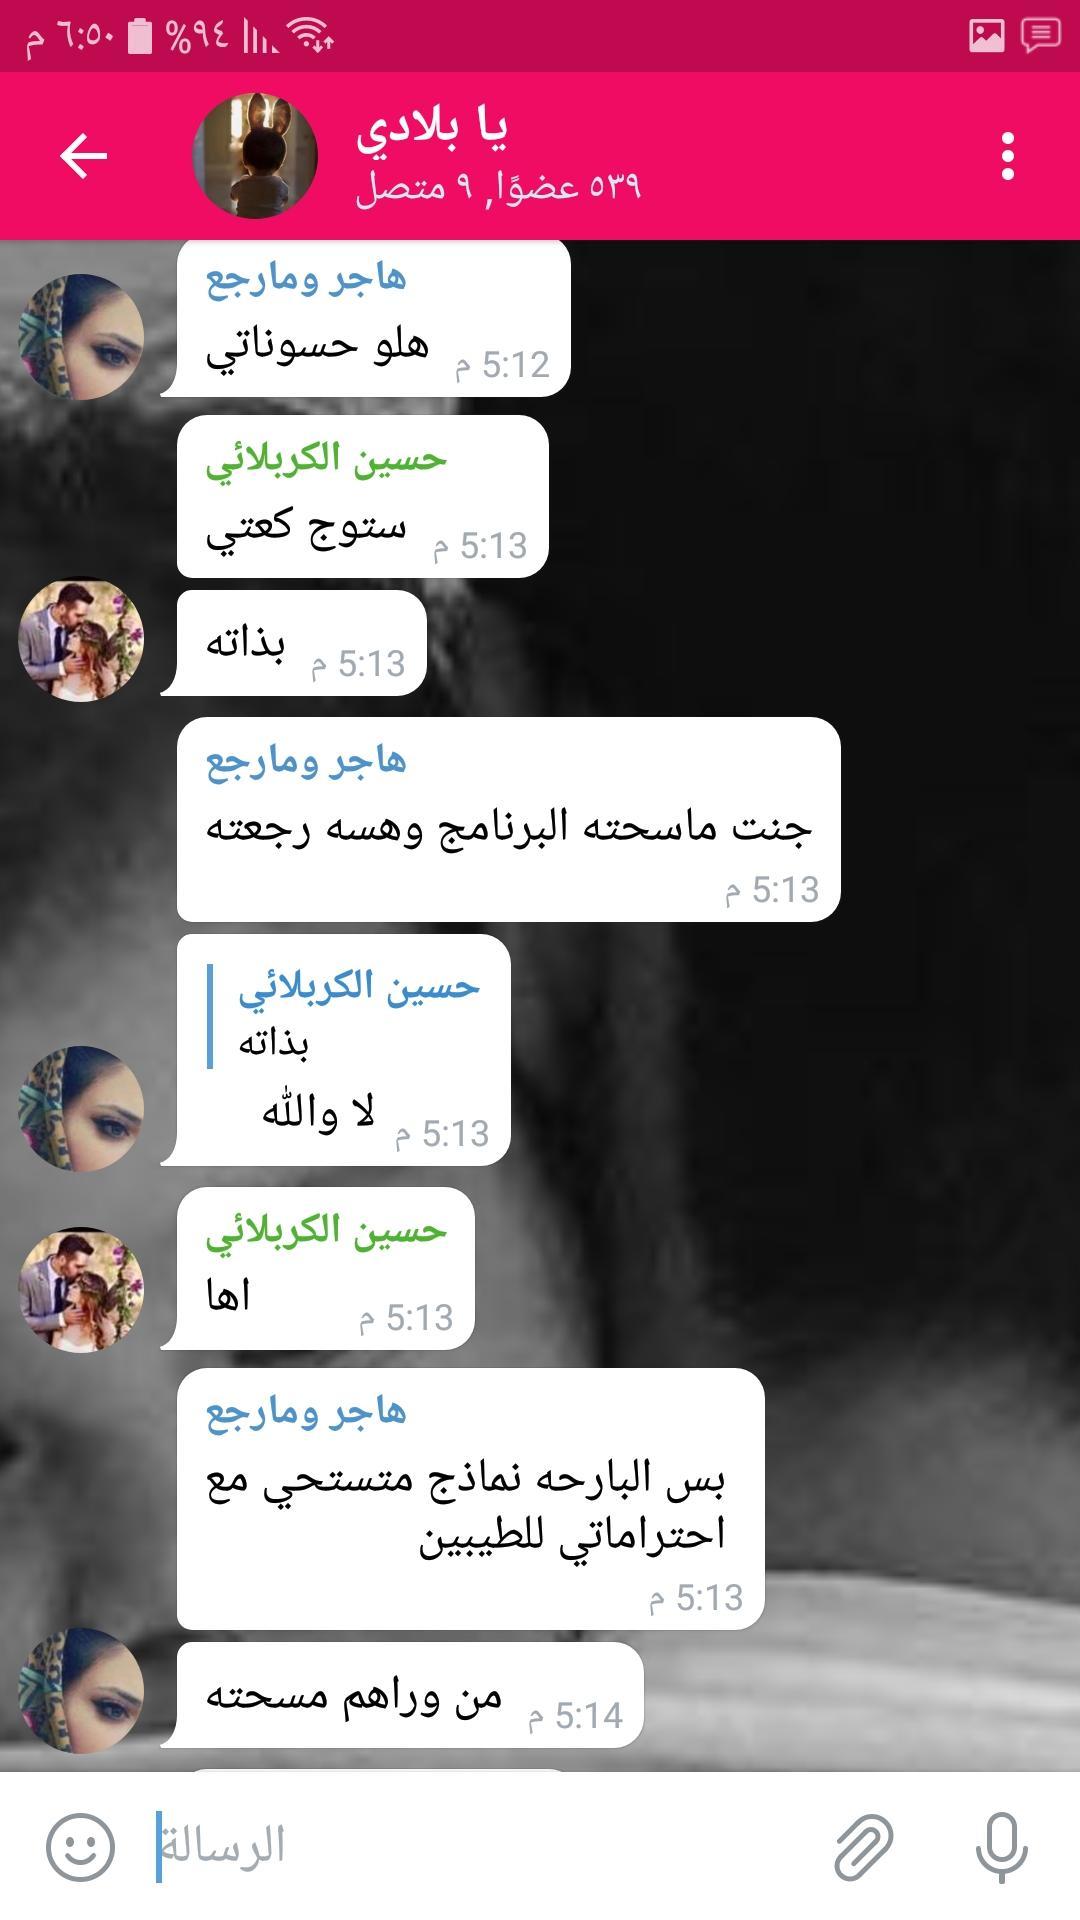 تعارف بنات وشباب +18 1.0.16 Screenshot 6